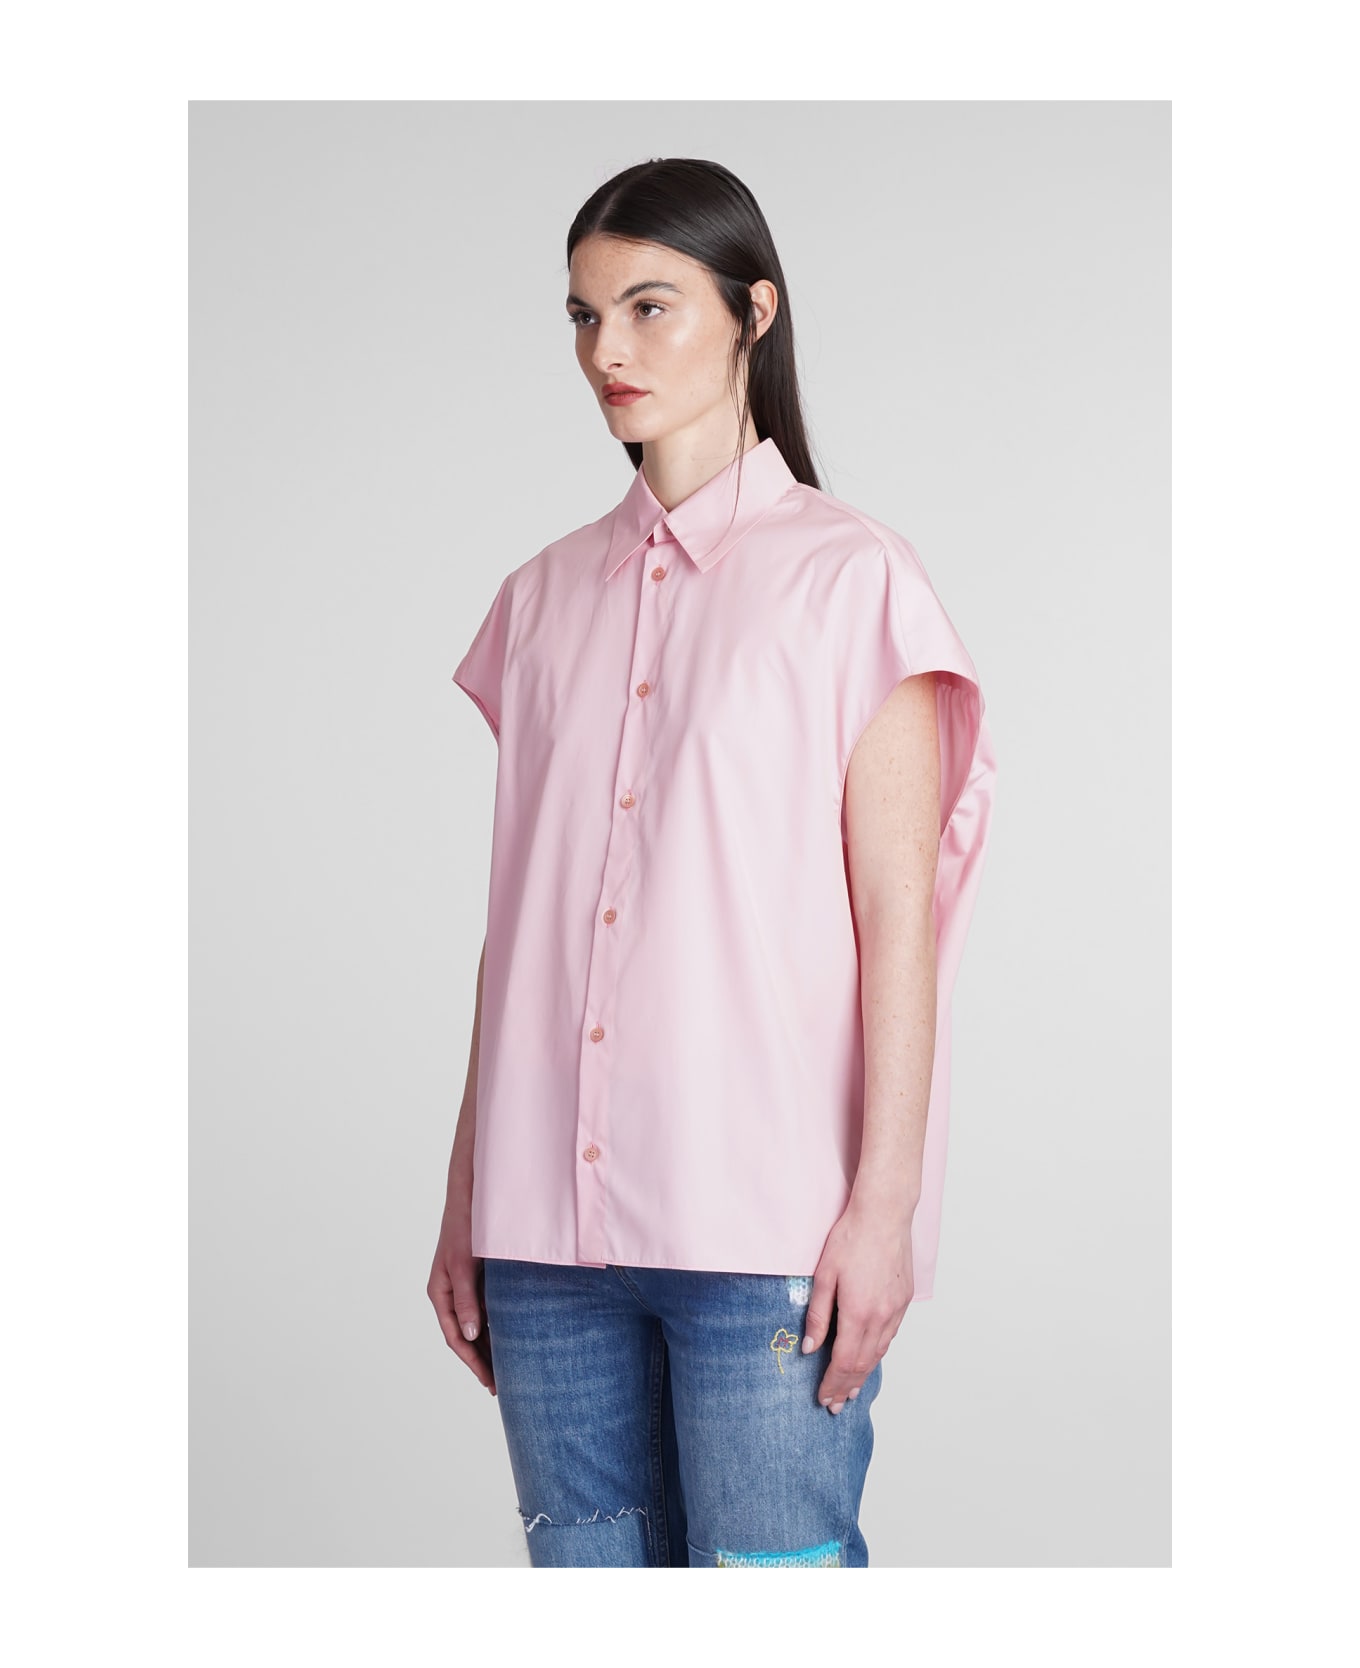 Marni Shirt In Rose-pink Cotton - rose-pink シャツ